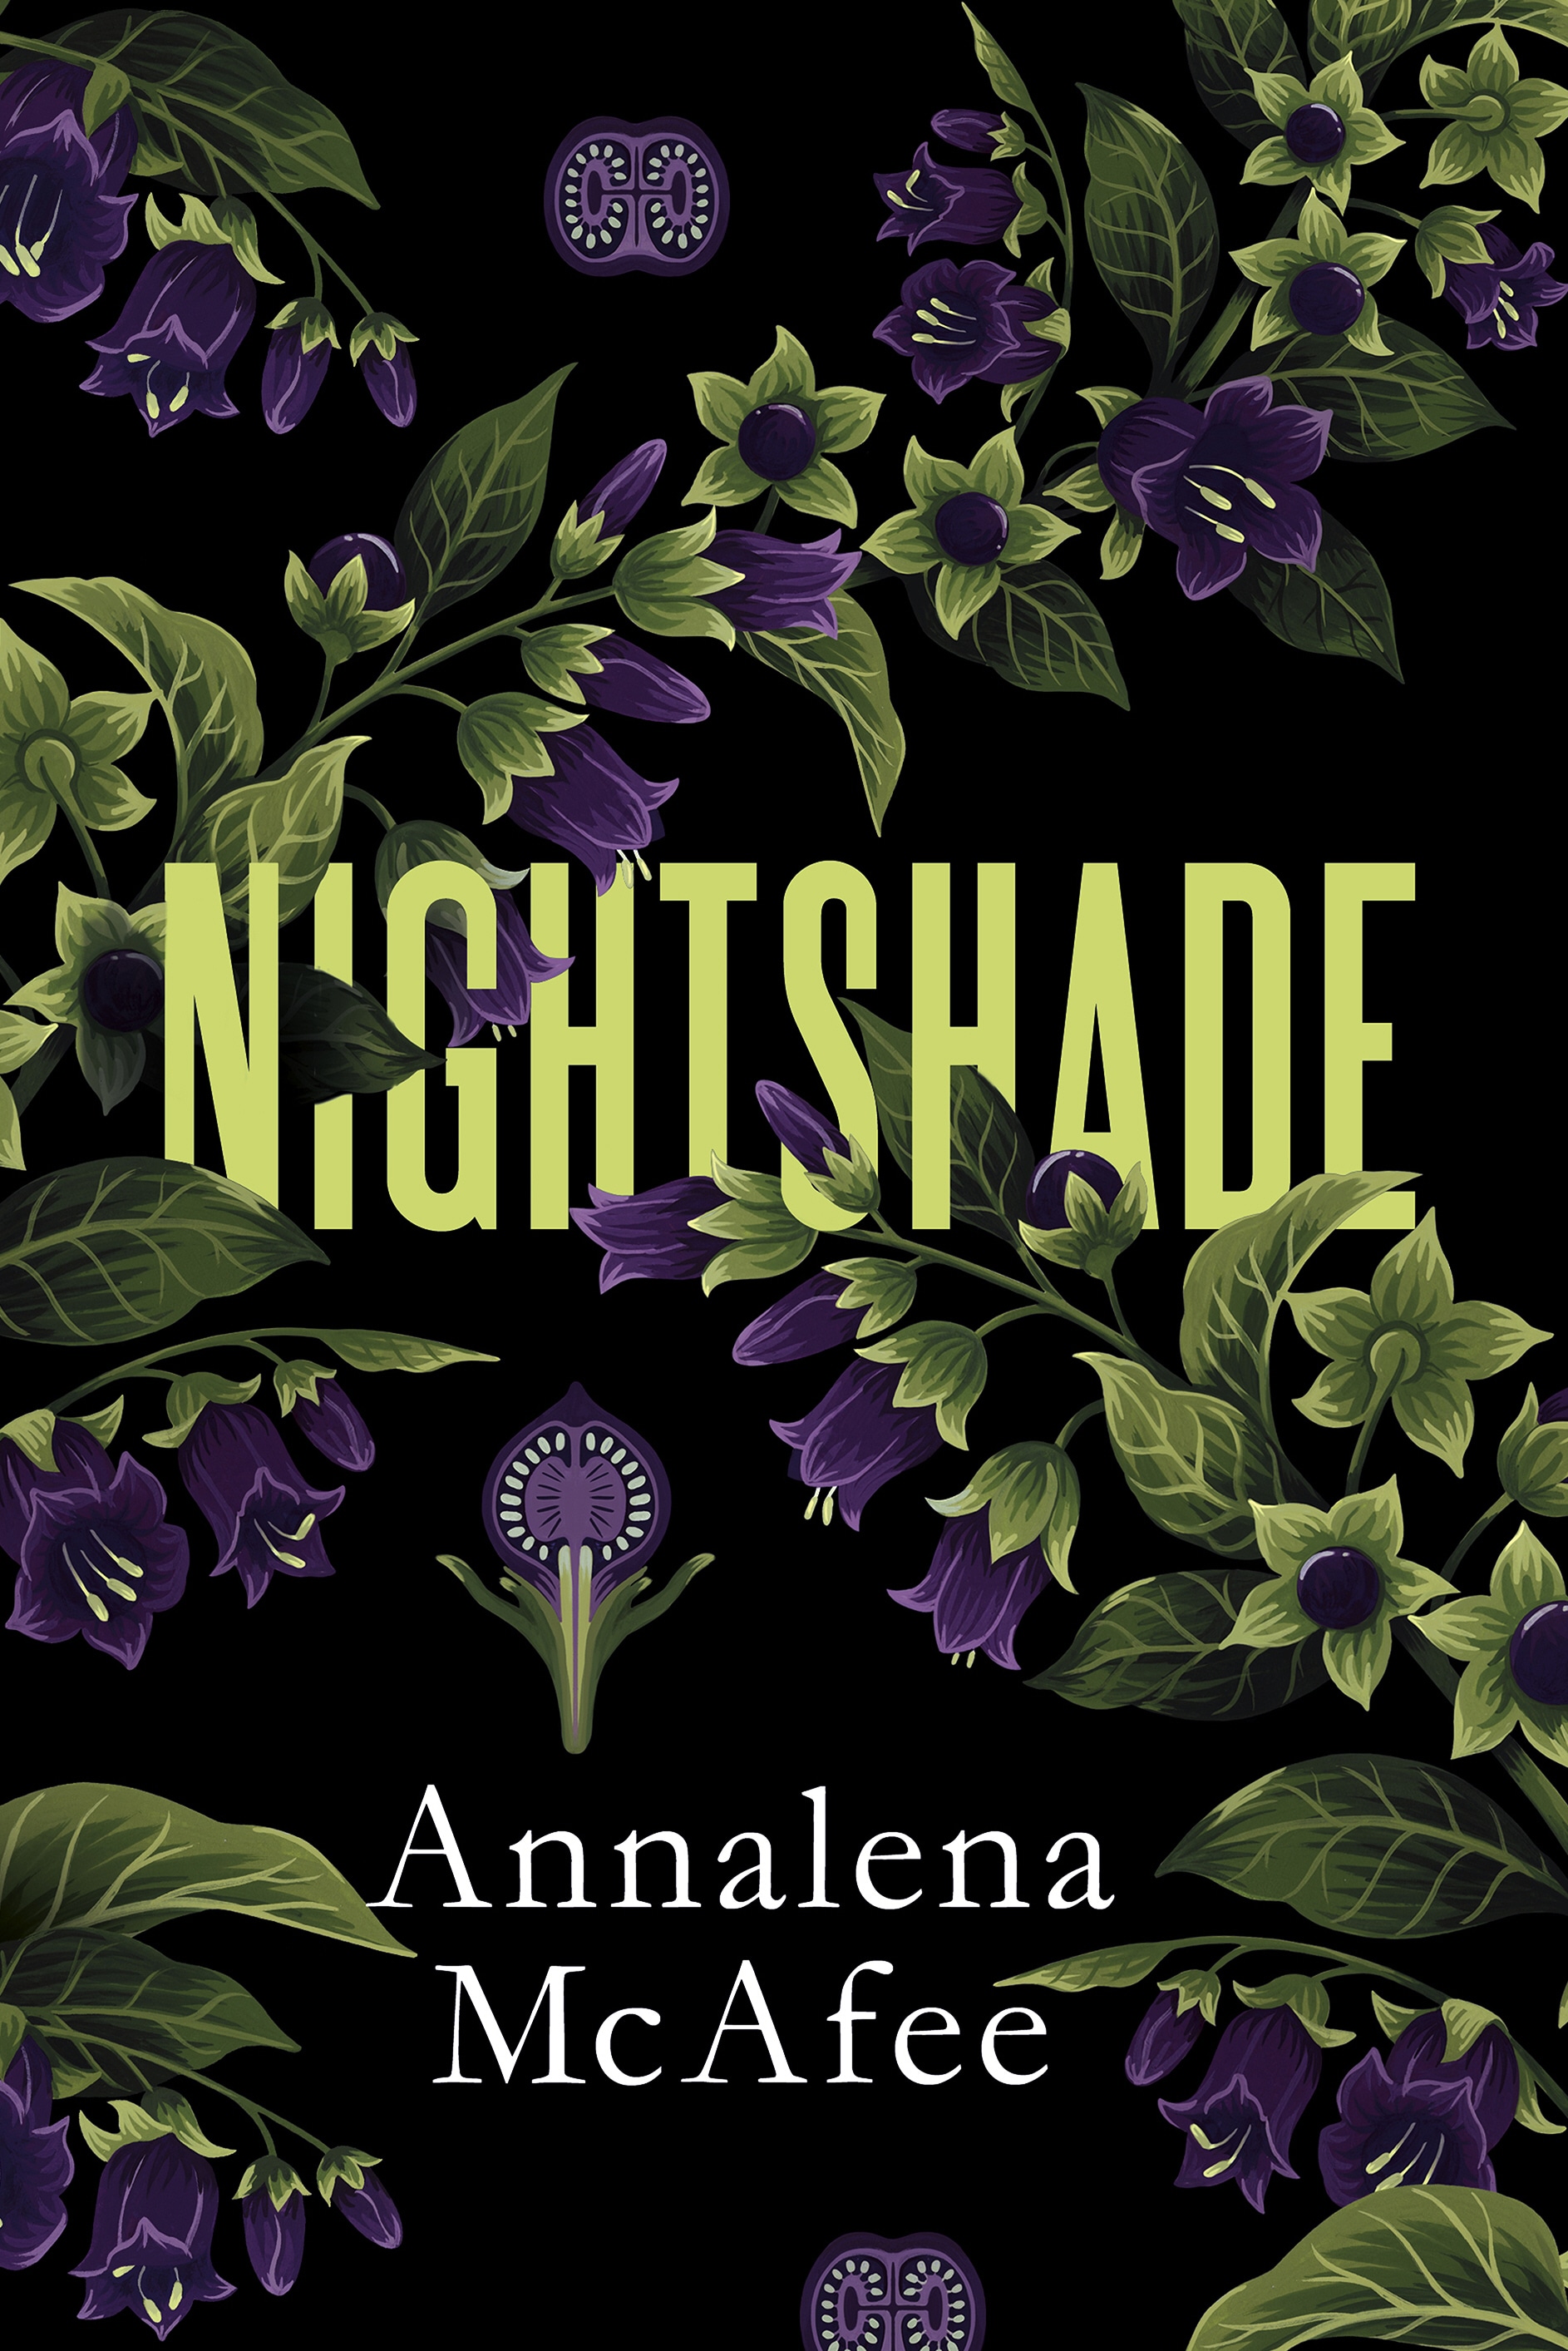 Book “Nightshade” by Annalena McAfee — March 19, 2020